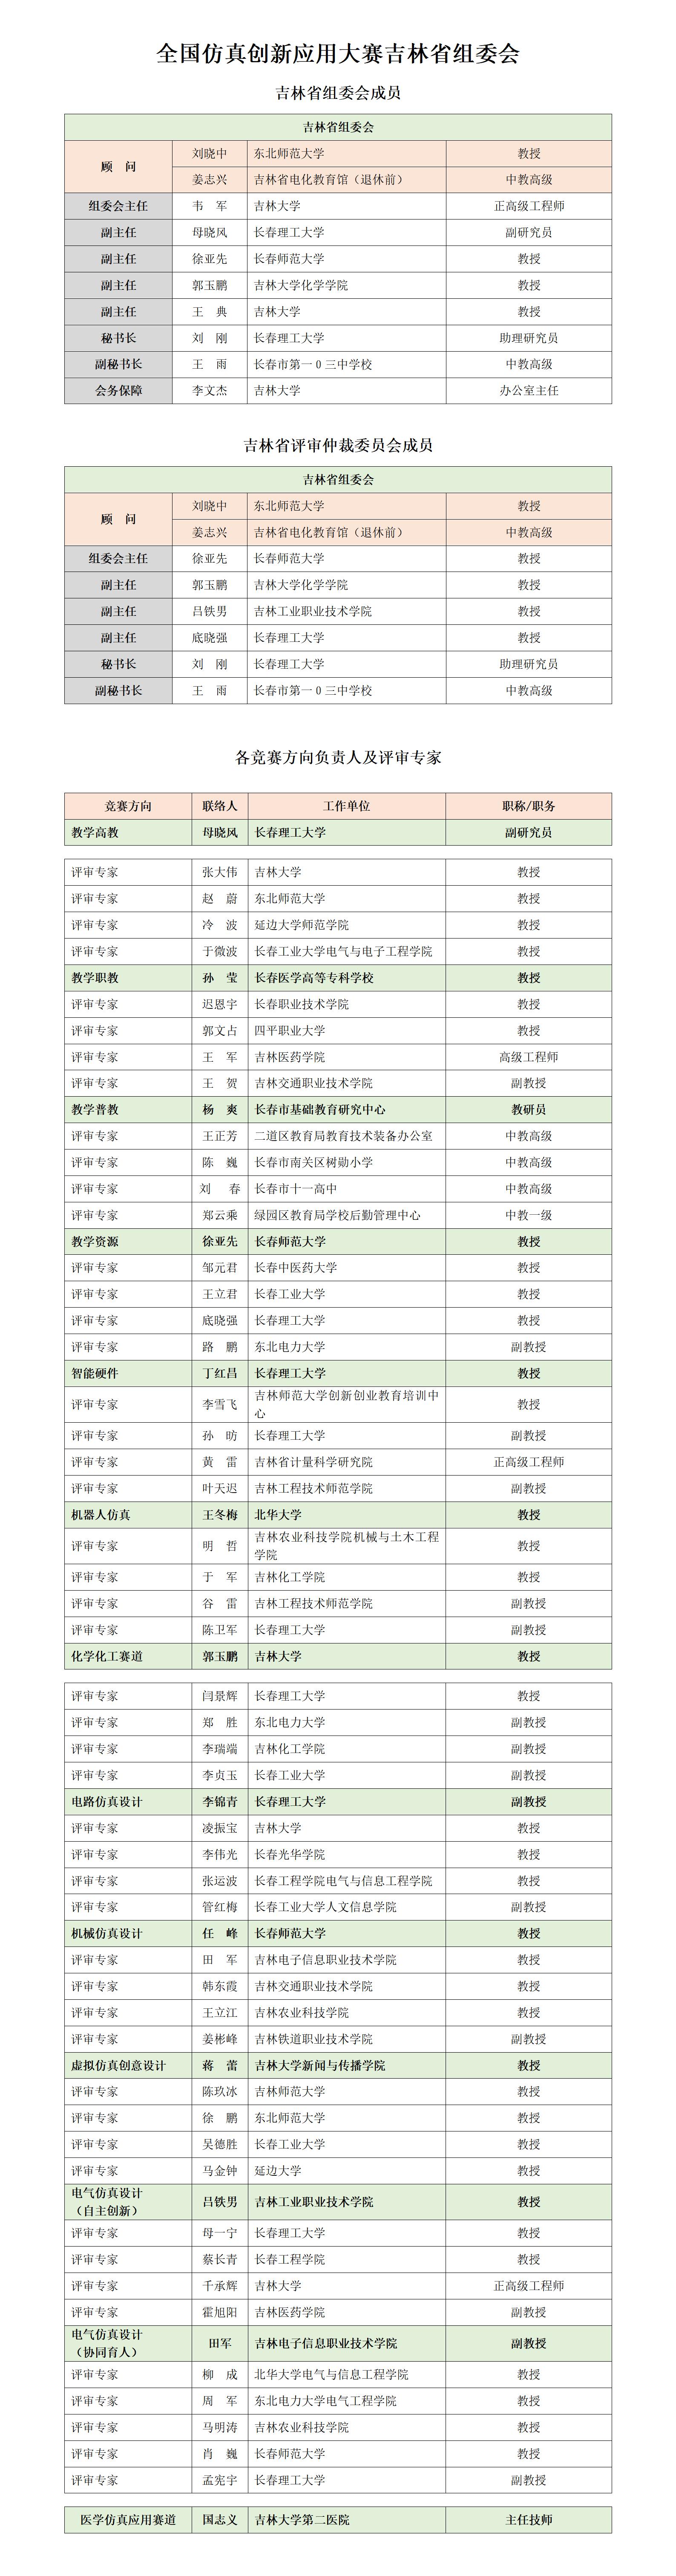 吉林省赛区组委会及专家名录对外公布版（20220520）_01.jpg